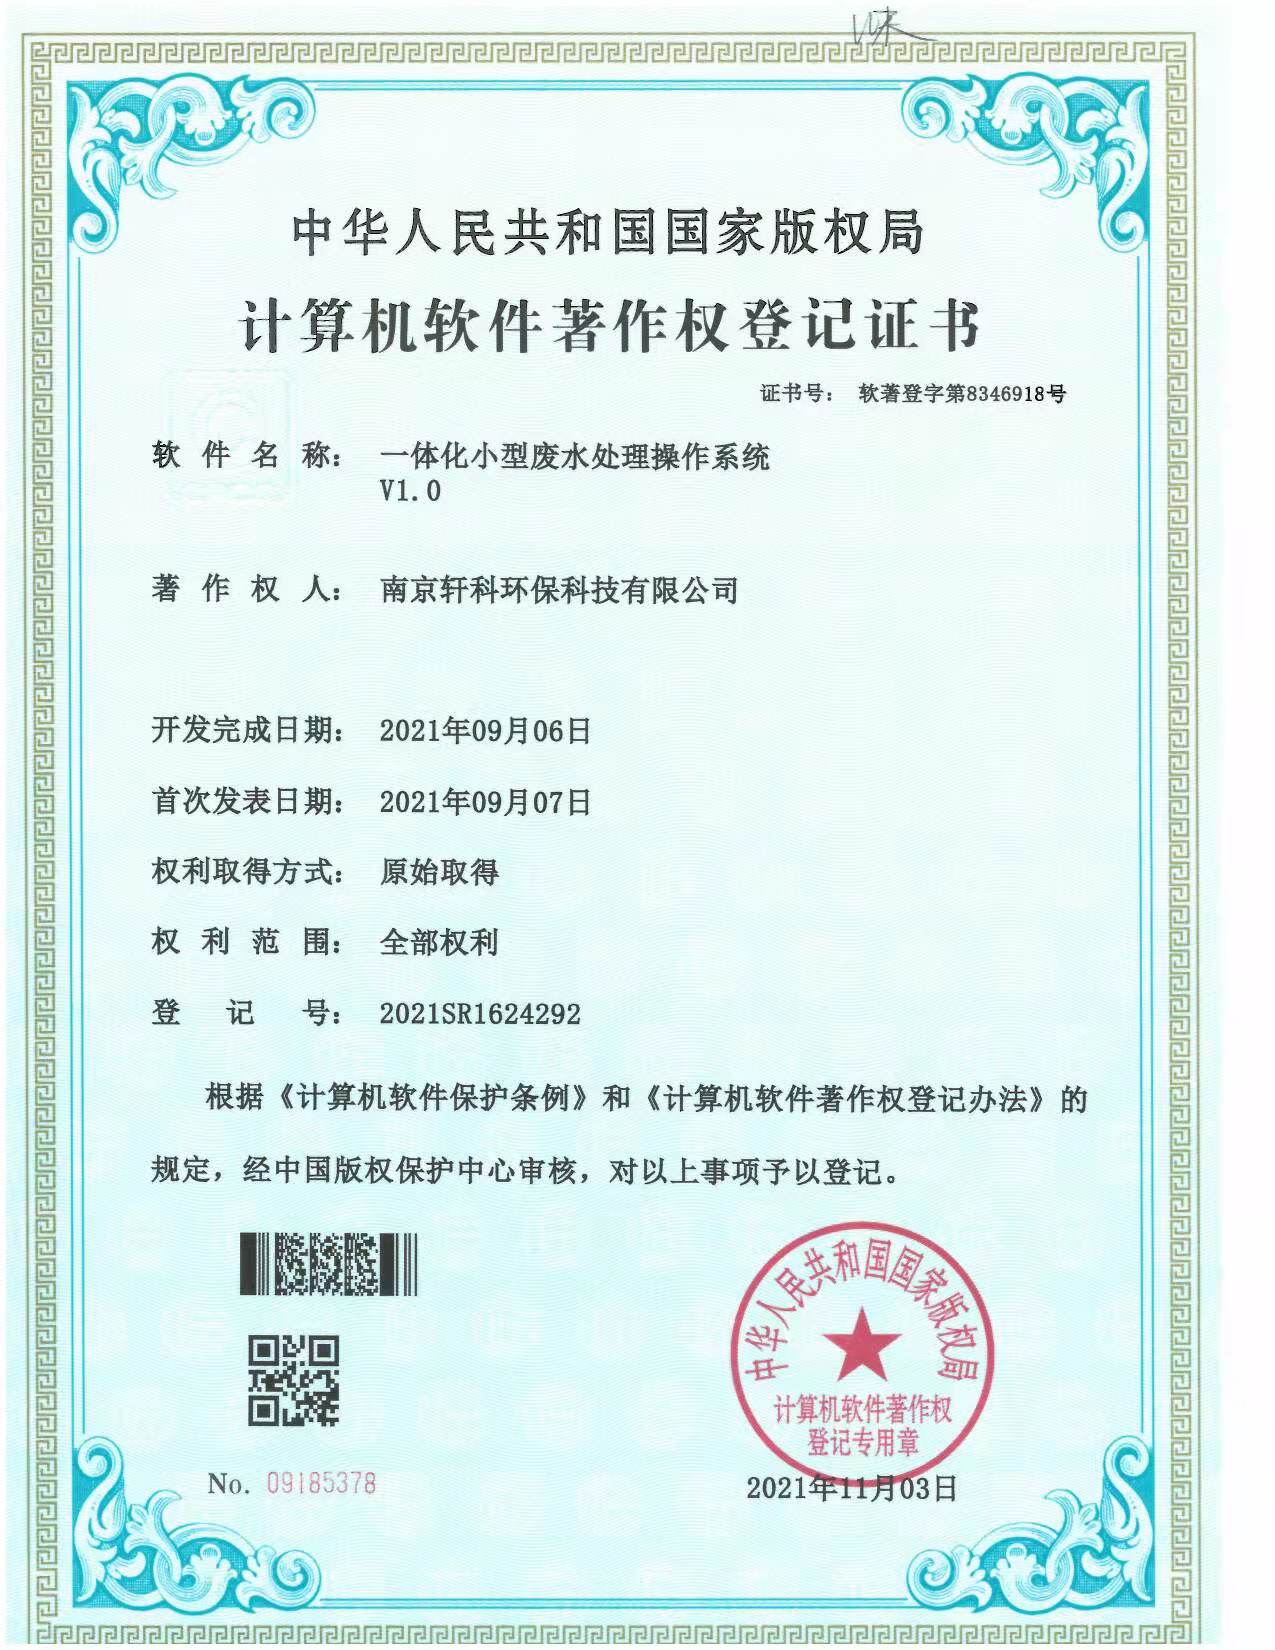 南昌小型一体化废水处理系统软件著作权证书